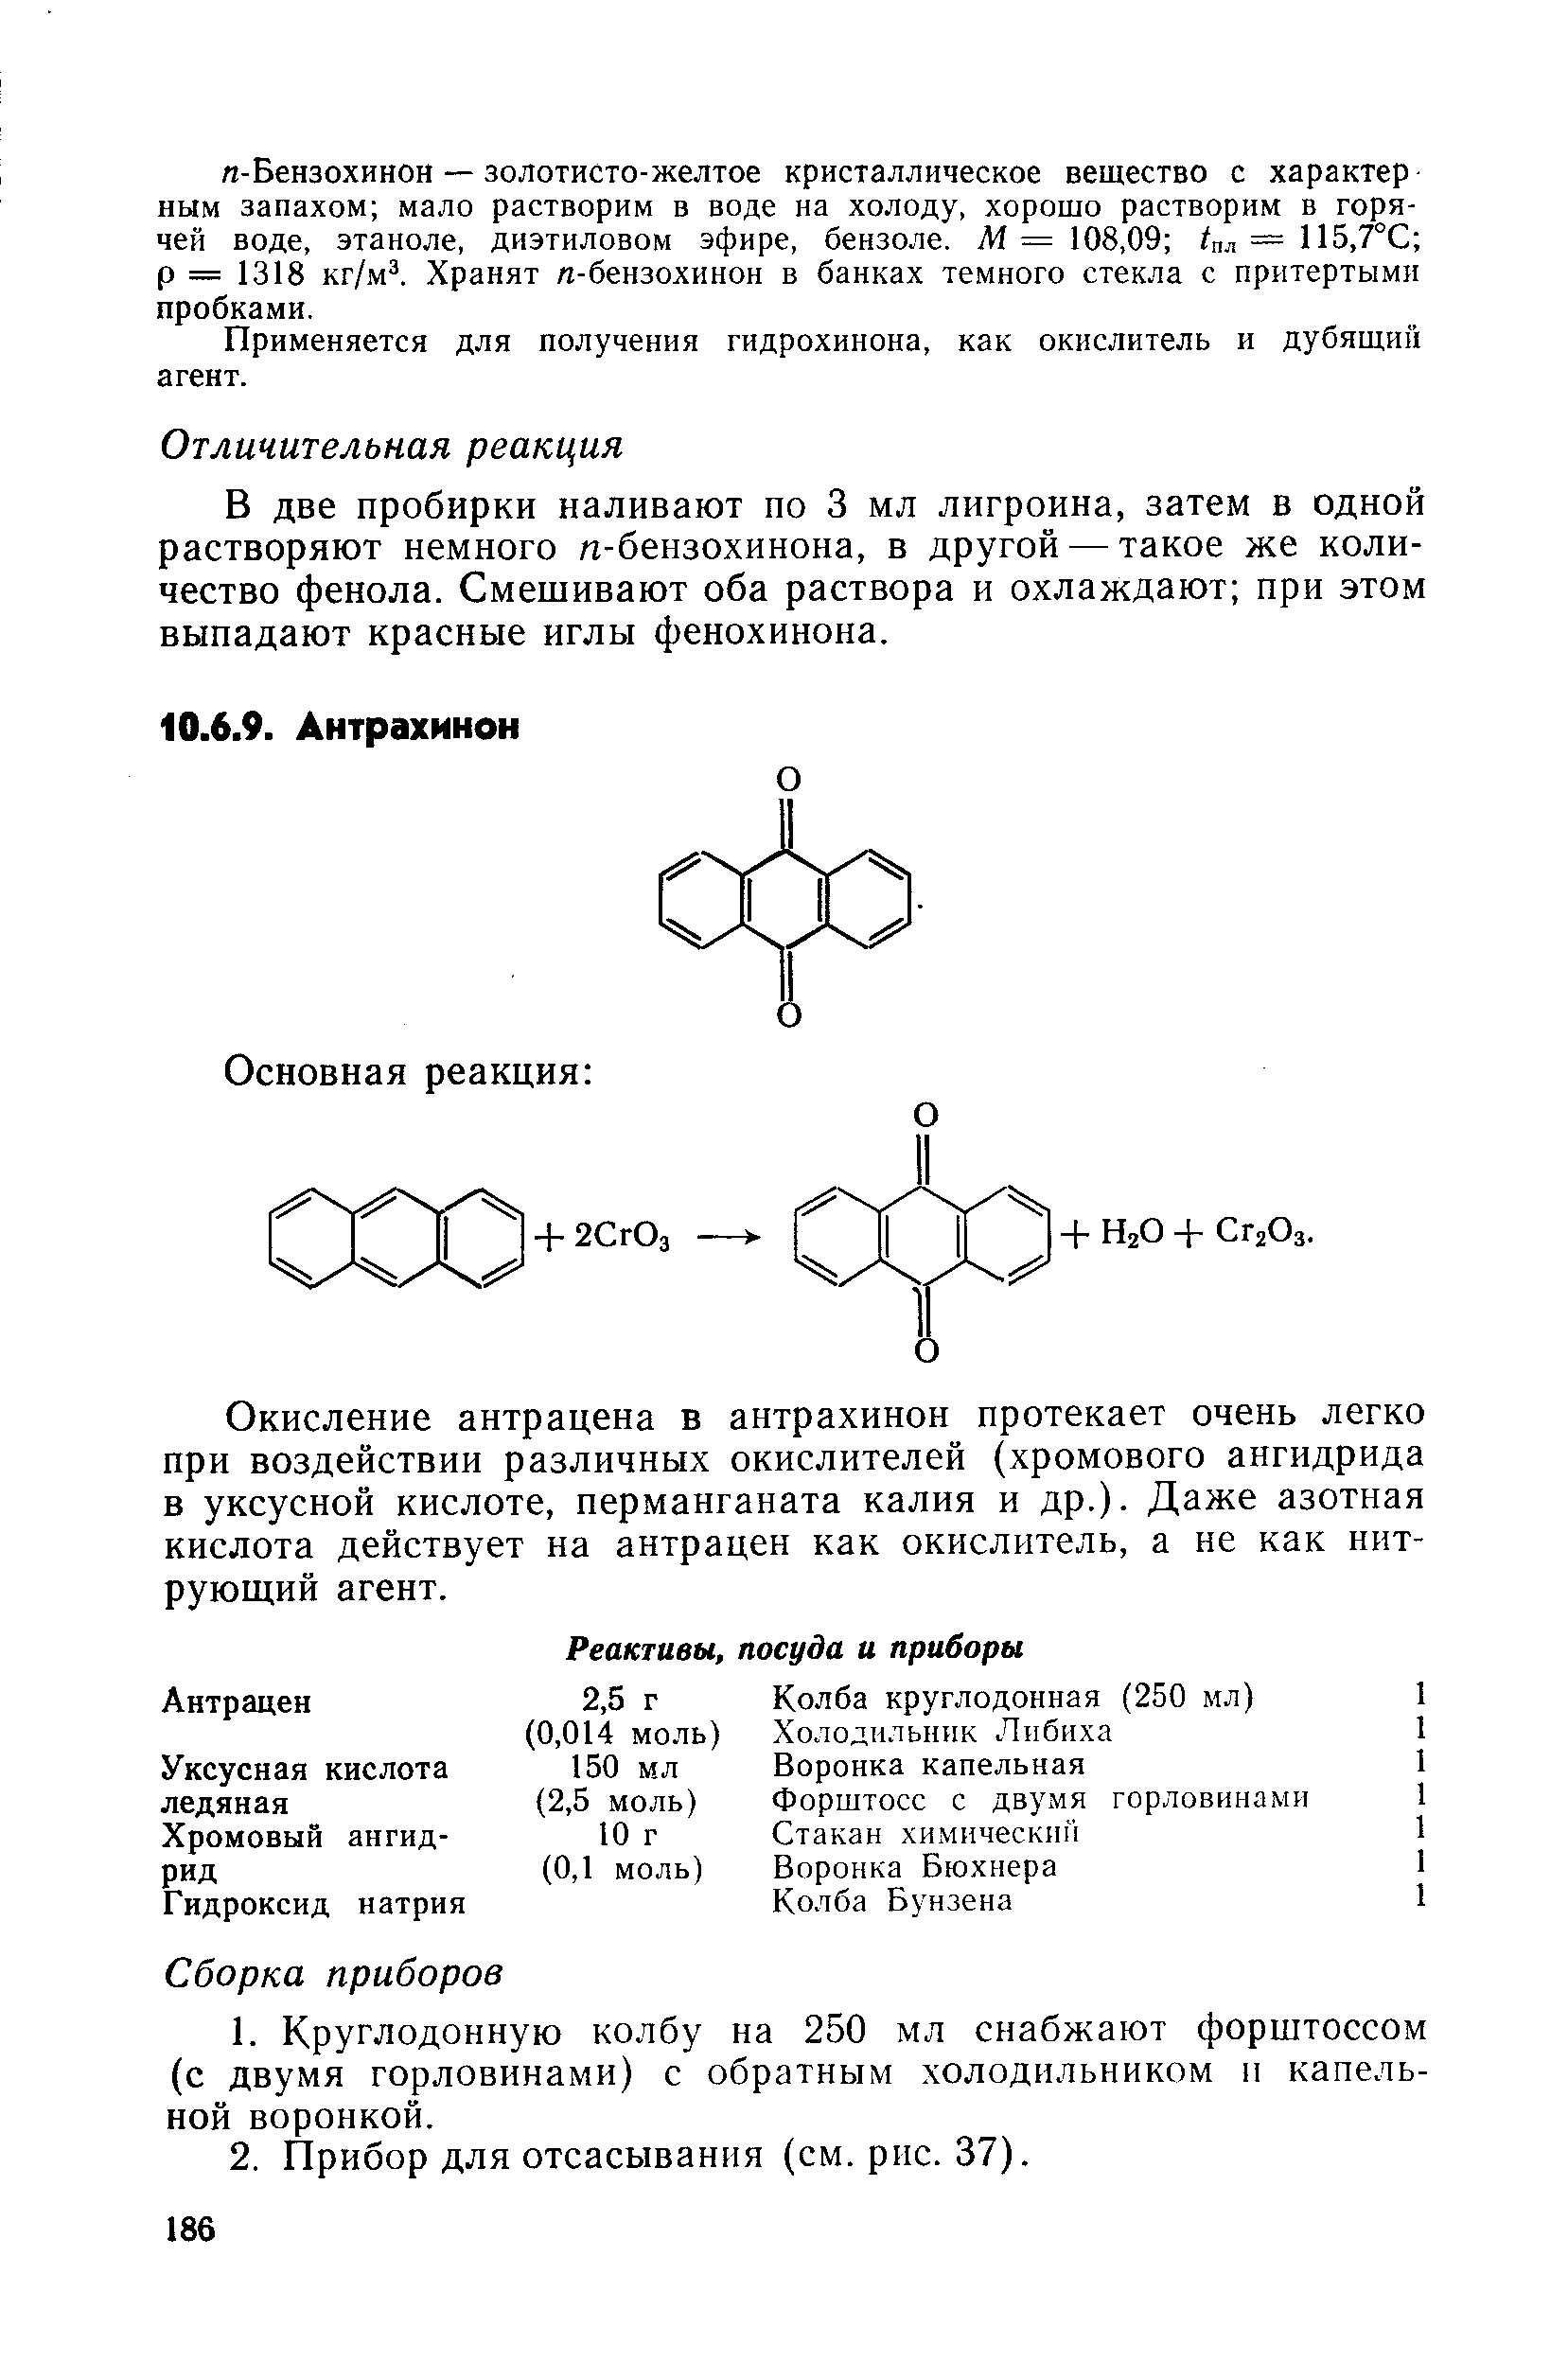 Окисление антрацена в антрахинон протекает очень легко при воздействии различных окислителей (хромового ангидрида в уксусной кислоте, перманганата калия и др.). Даже азотная кислота действует на антрацен как окислитель, а не как нитрующий агент.